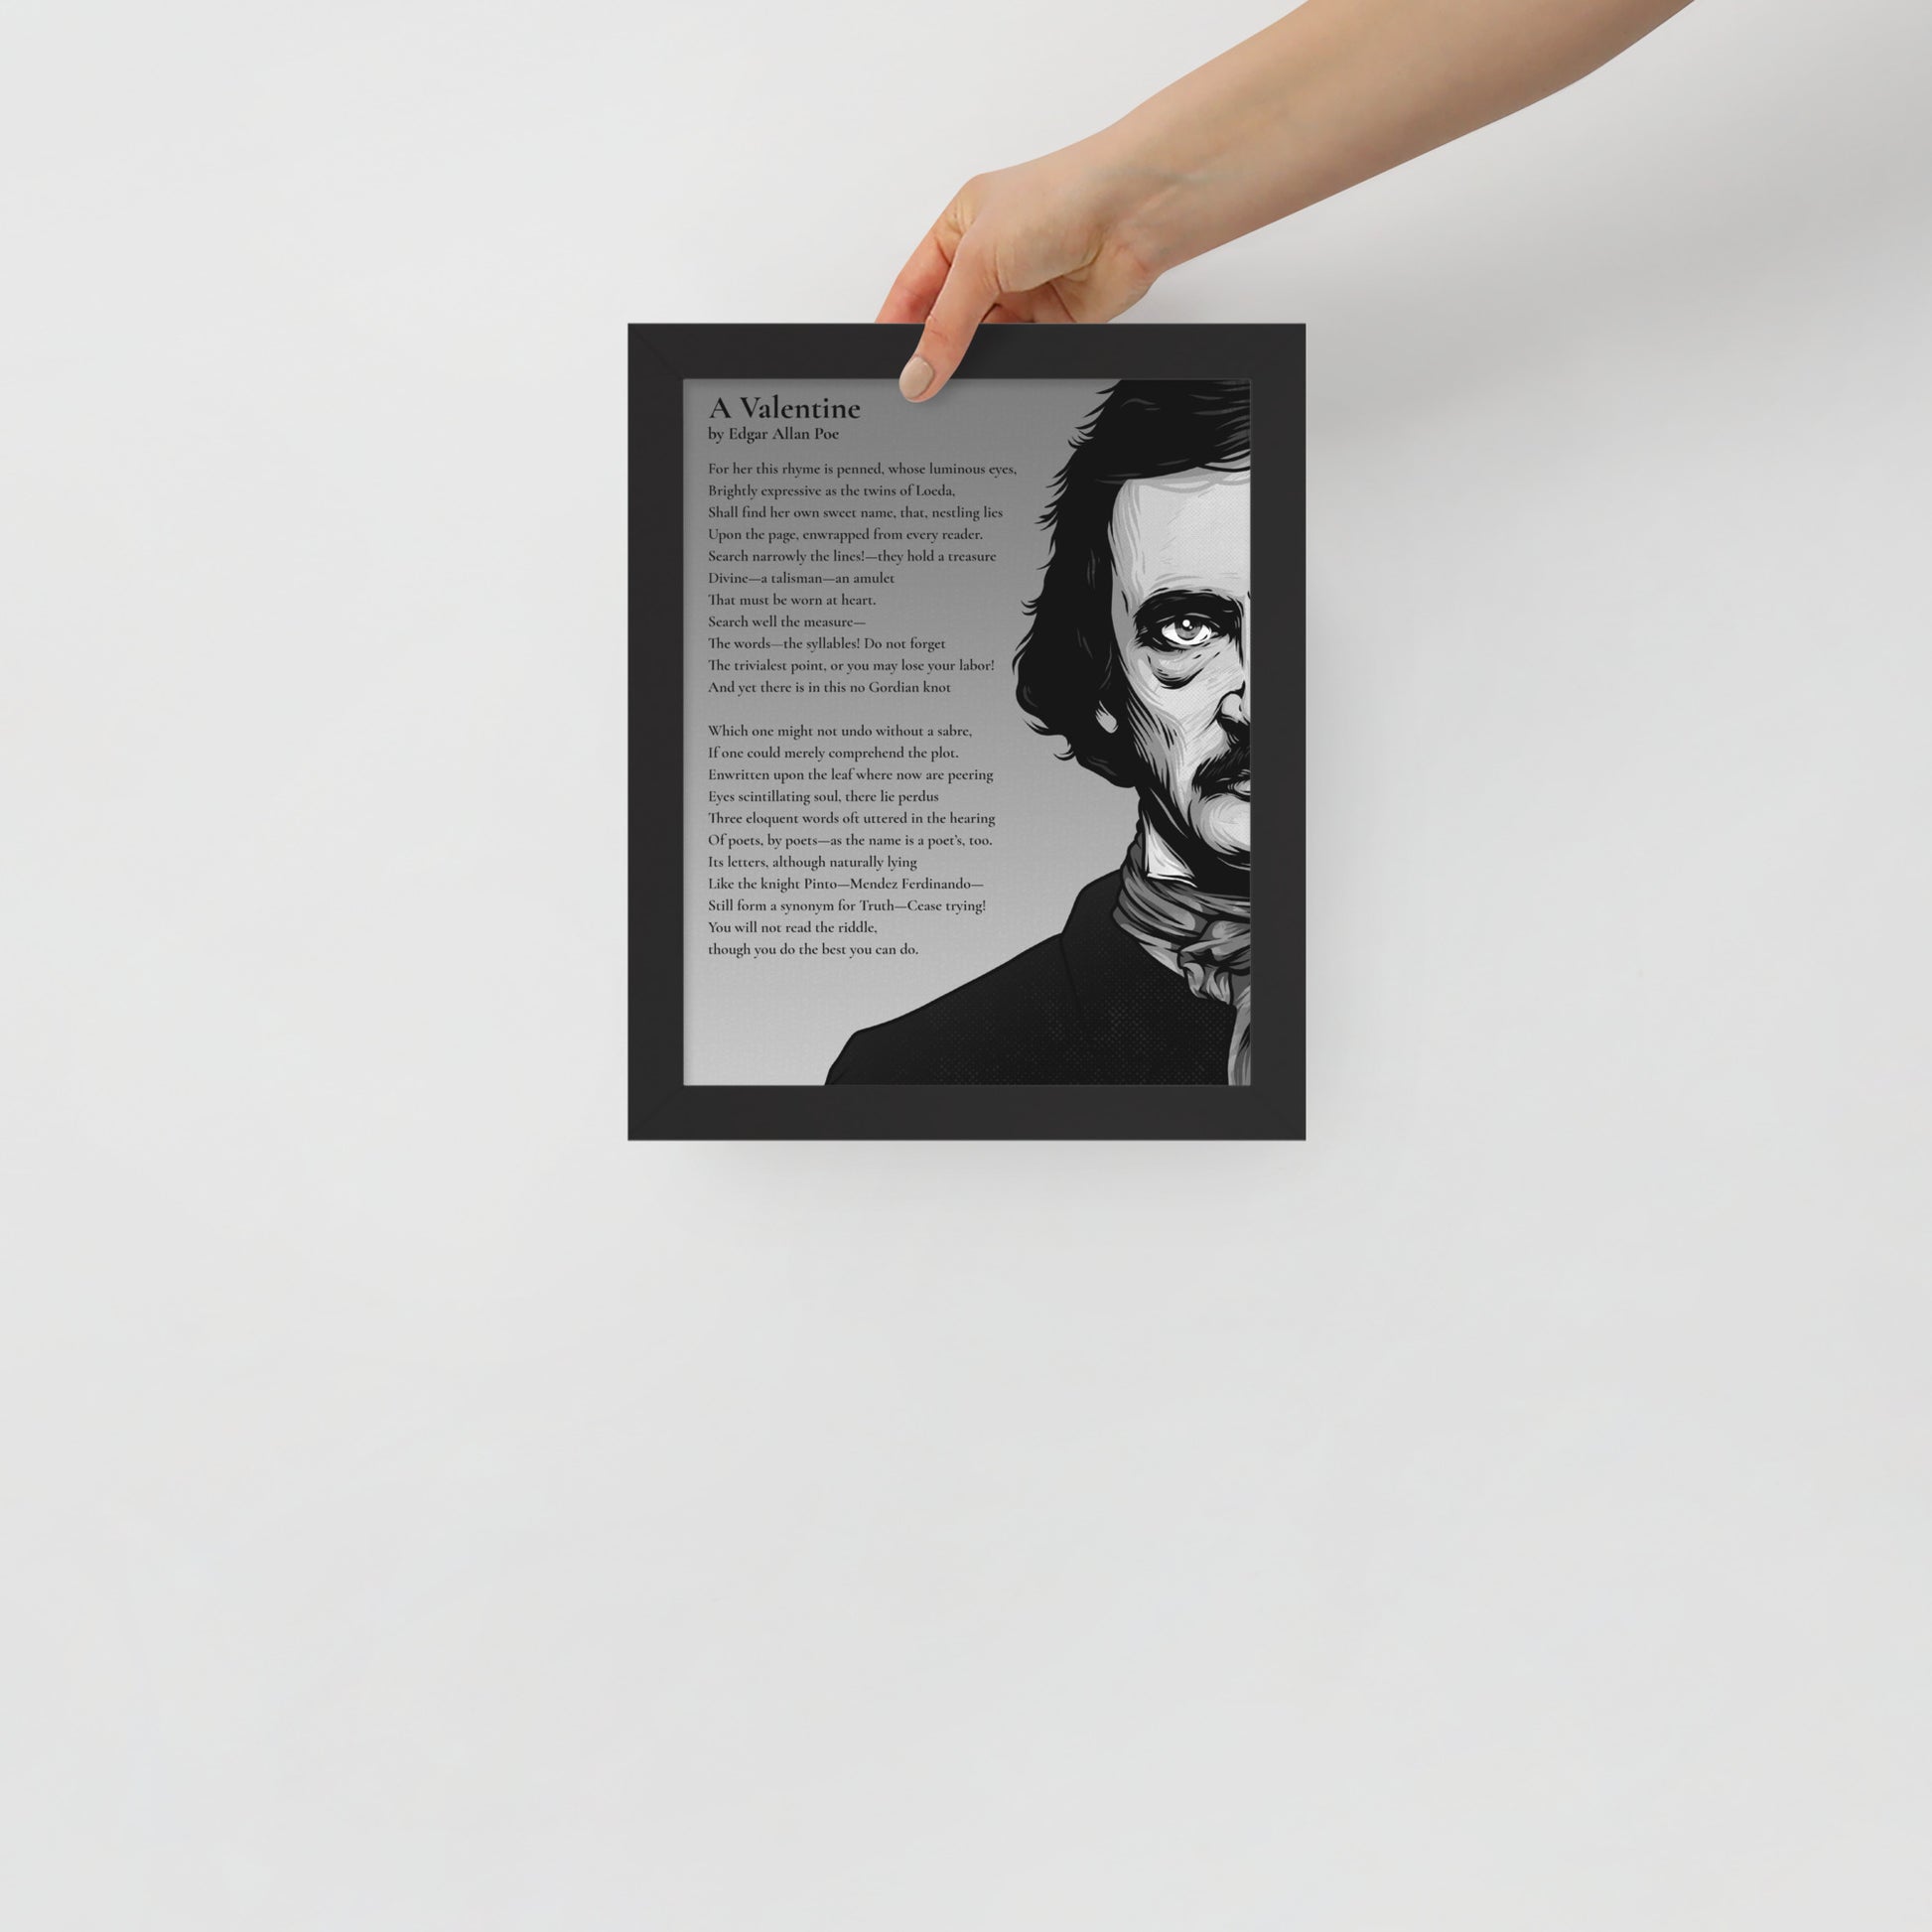 Edgar Allan Poe's 'A Valentine' Framed Matted Poster - 8 x 10 Black Frame